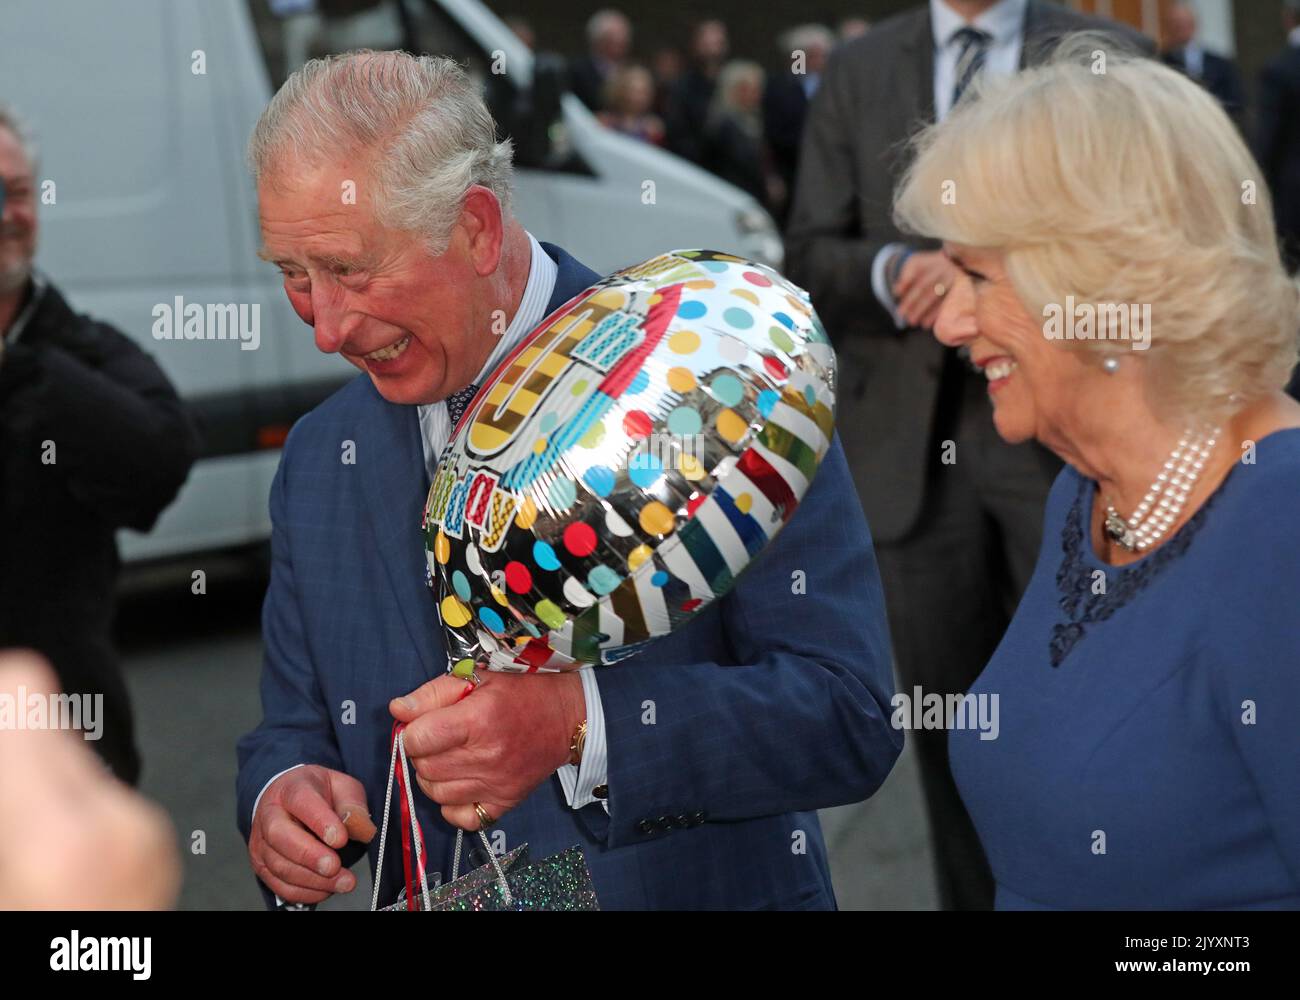 Foto del archivo de fecha 14/11/2018 del Príncipe de Gales sosteniendo un regalo de cumpleaños mientras él y la Duquesa de Cornwall llegaron para una fiesta de té en Spencer House en Londres para celebrar 70 personas inspiradoras que conmemoraban su 70th cumpleaños este año. Fecha de emisión: Jueves 8 de septiembre de 2022. Foto de stock